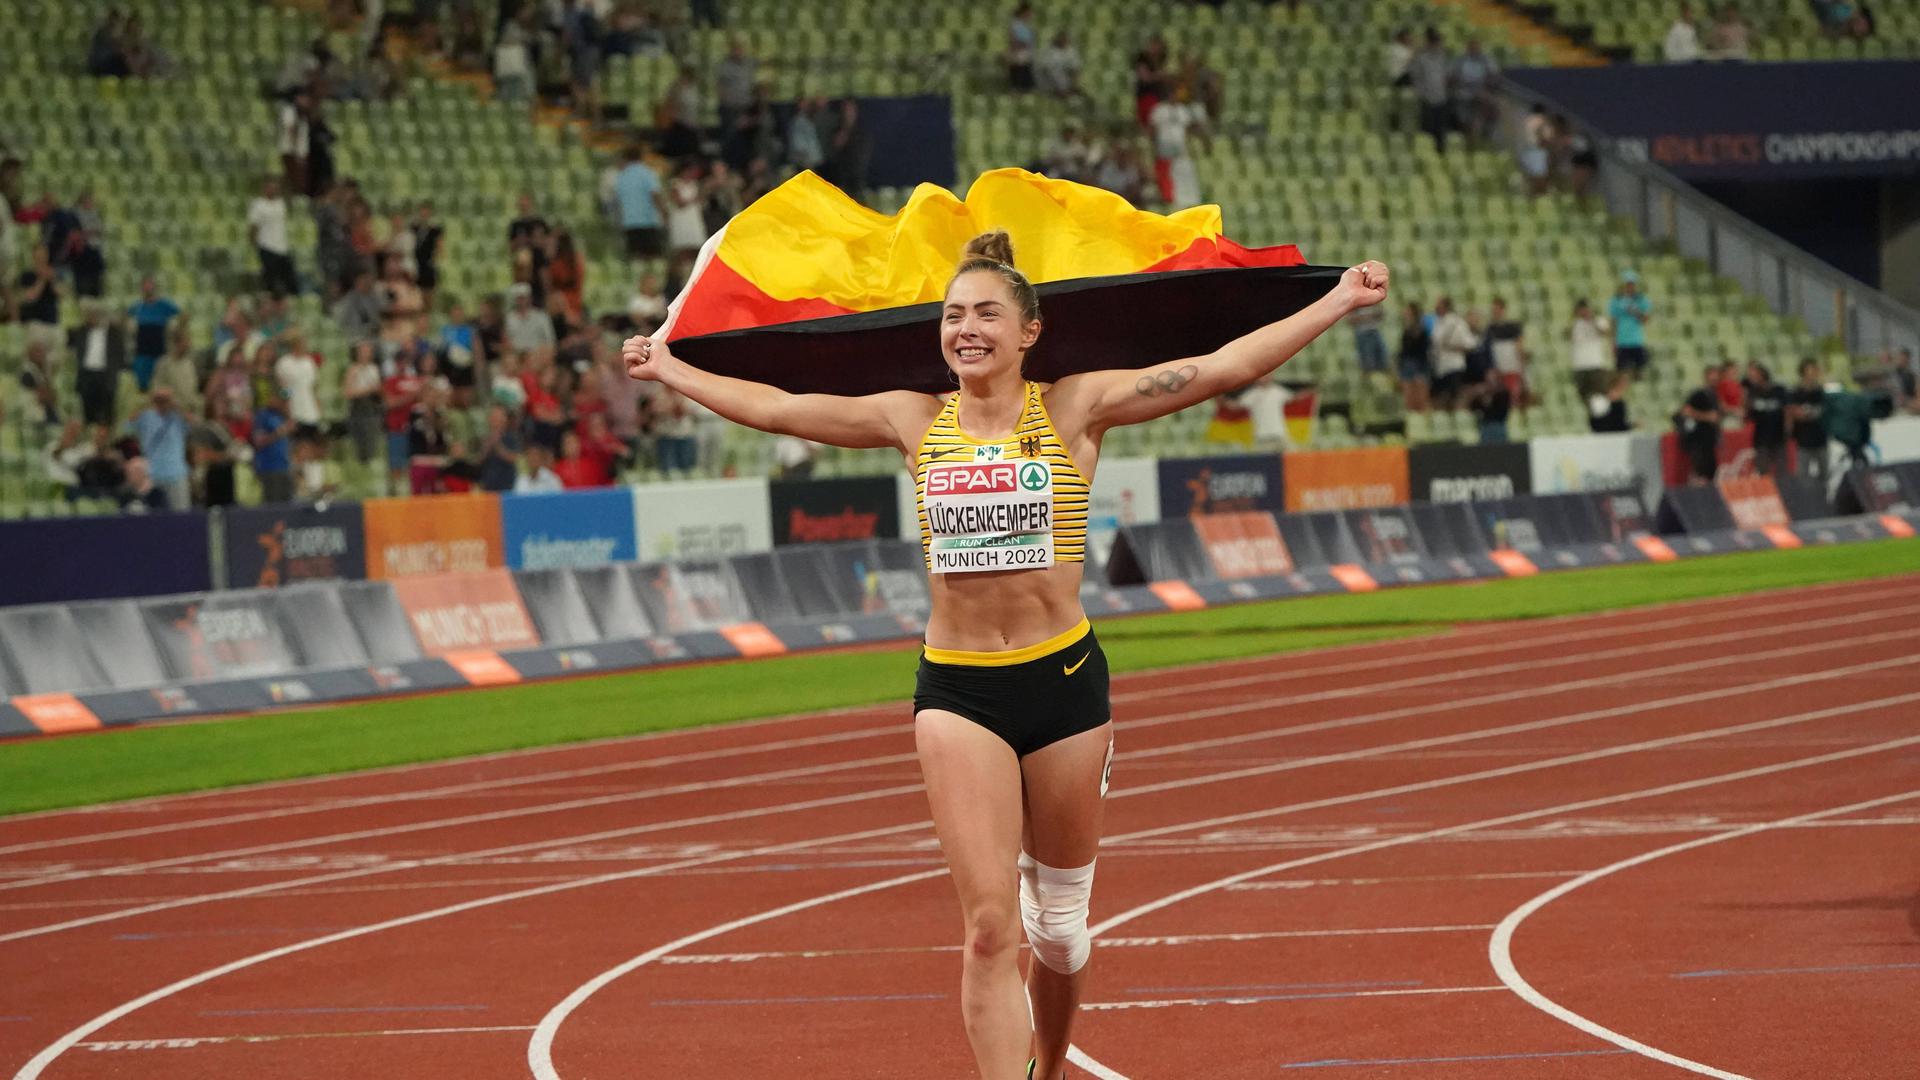 Goldlächeln: Sprinterin Gina Lückenkemper feiert ihren EM-Titel über die 100 Meter. Die Plätze in Münchner Olympiastadion waren während des Finallaufs aber nur spärlich besetzt.